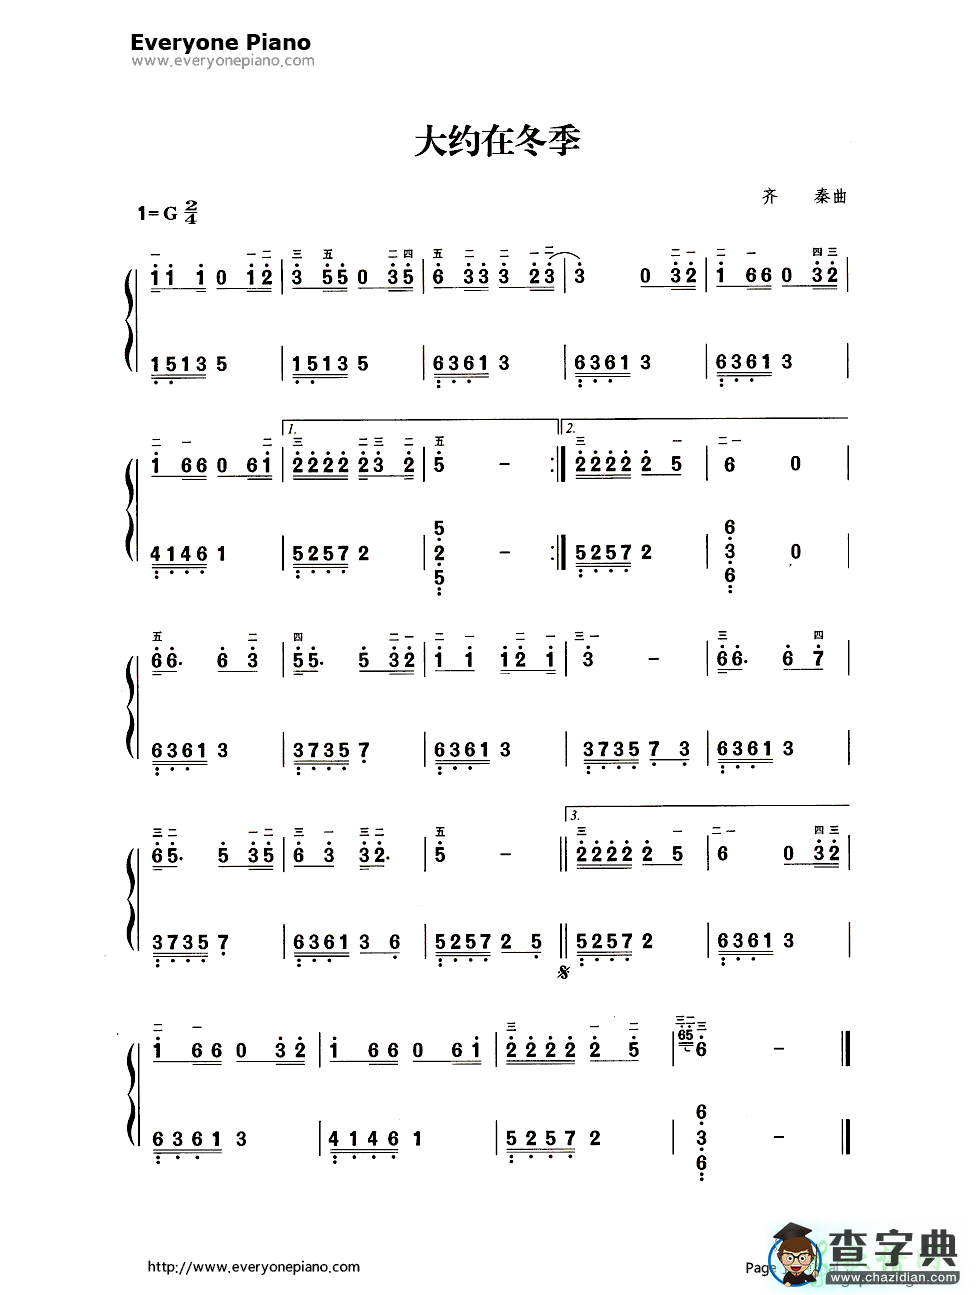 大约在冬季简谱歌谱_大约在冬季 有简谱,帮忙配和弦 用最简单的135 246之类或者琶音配就行 答的好的追分